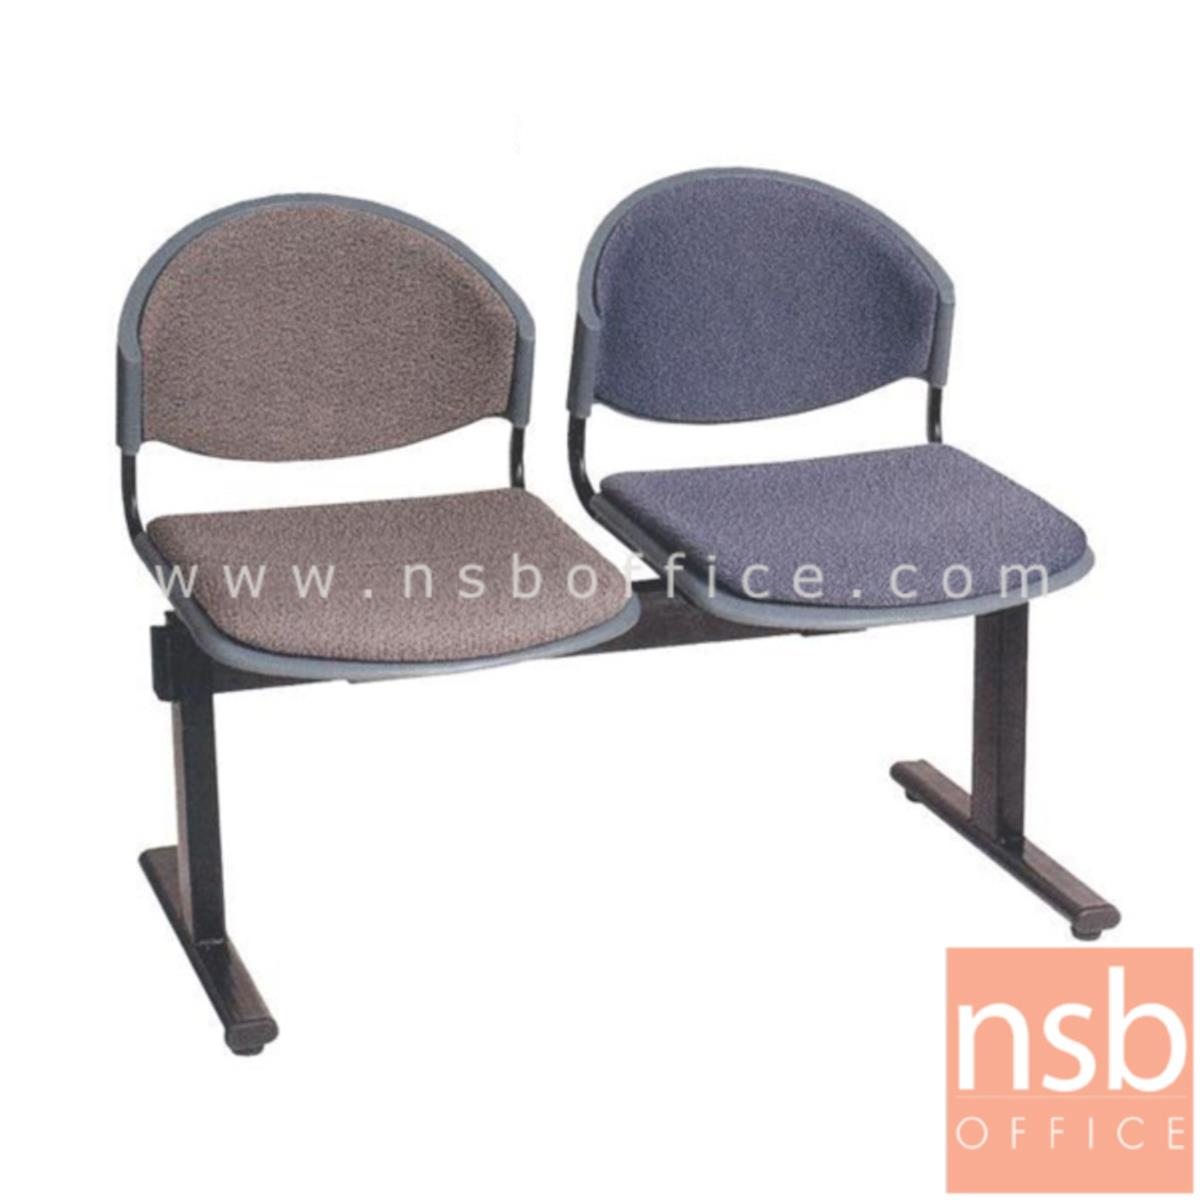 B06A040:เก้าอี้นั่งคอยเฟรมโพลี่หุ้มเบาะ รุ่น B980 2 ,3 ,4 ที่นั่ง ขนาด 100W ,150W ,200W cm. ขาเหล็ก